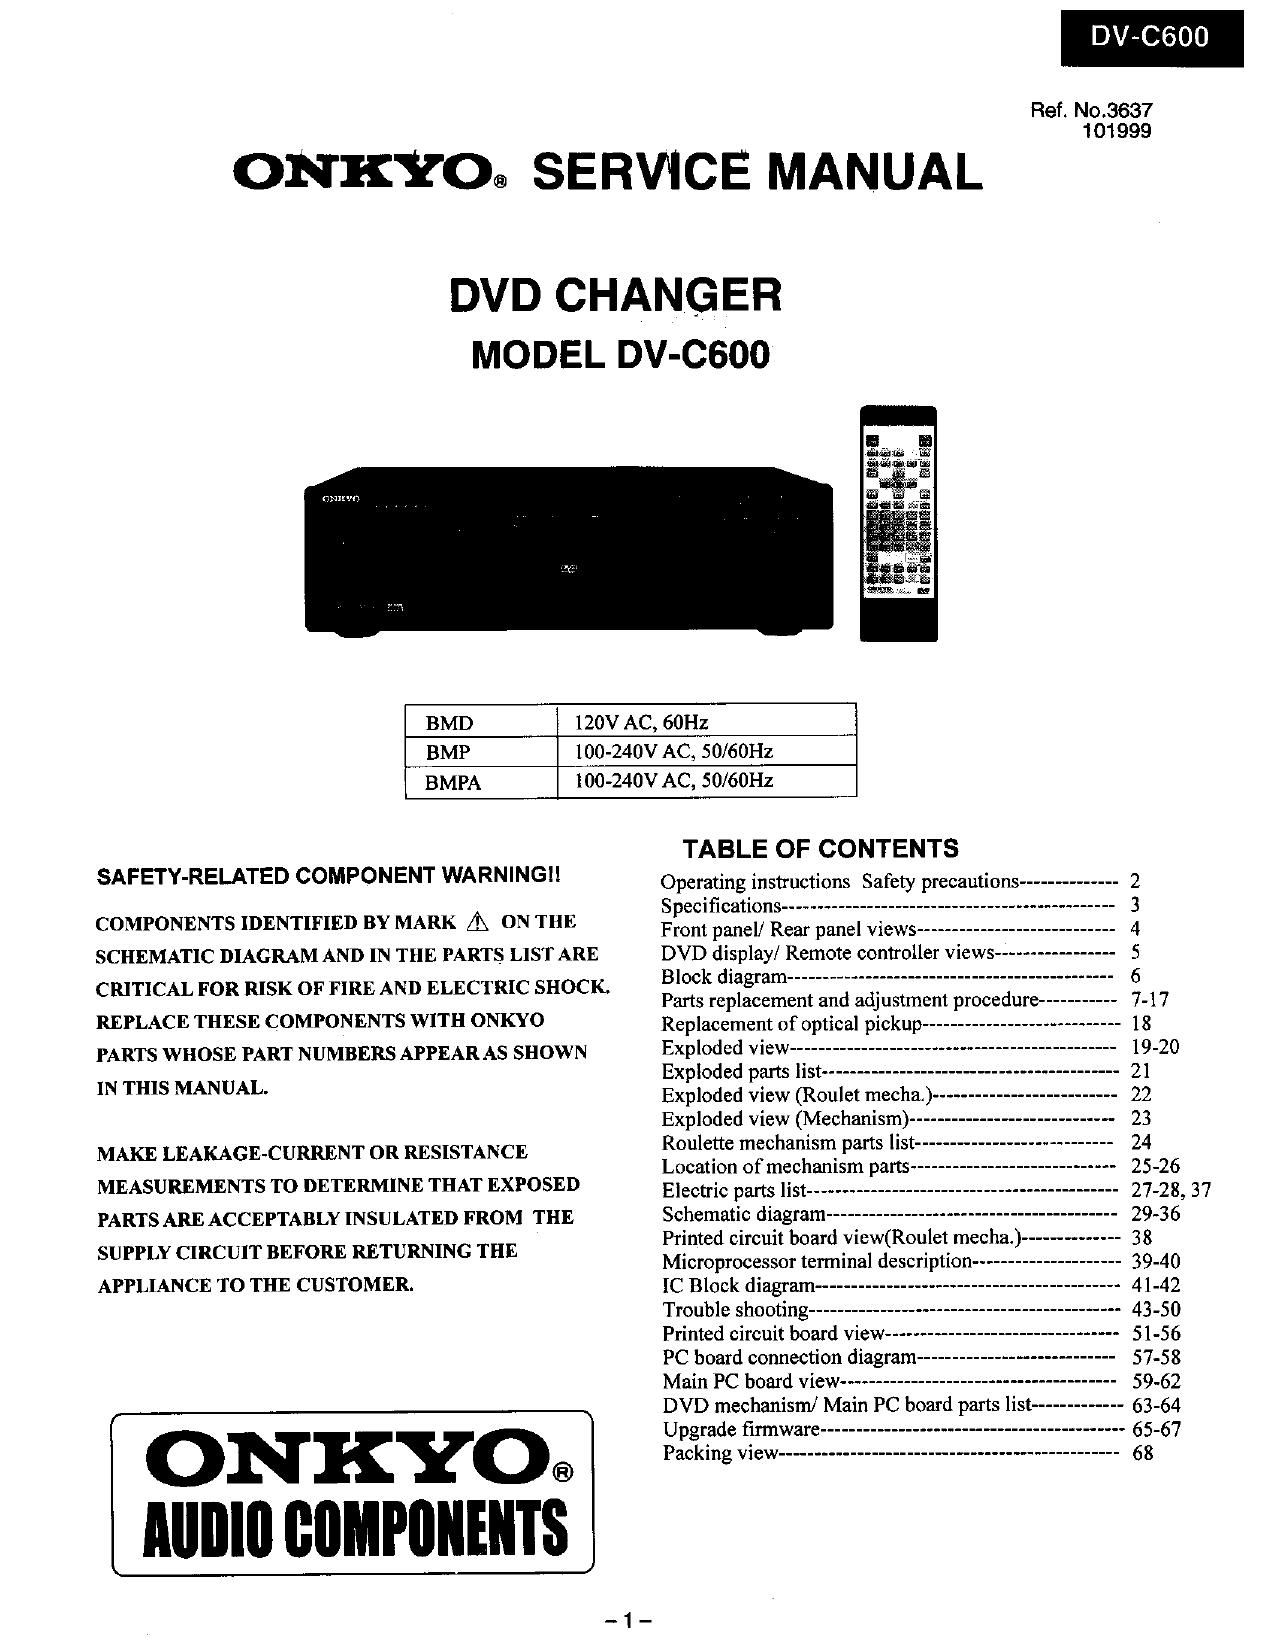 Onkyo DVC 600 Service Manual